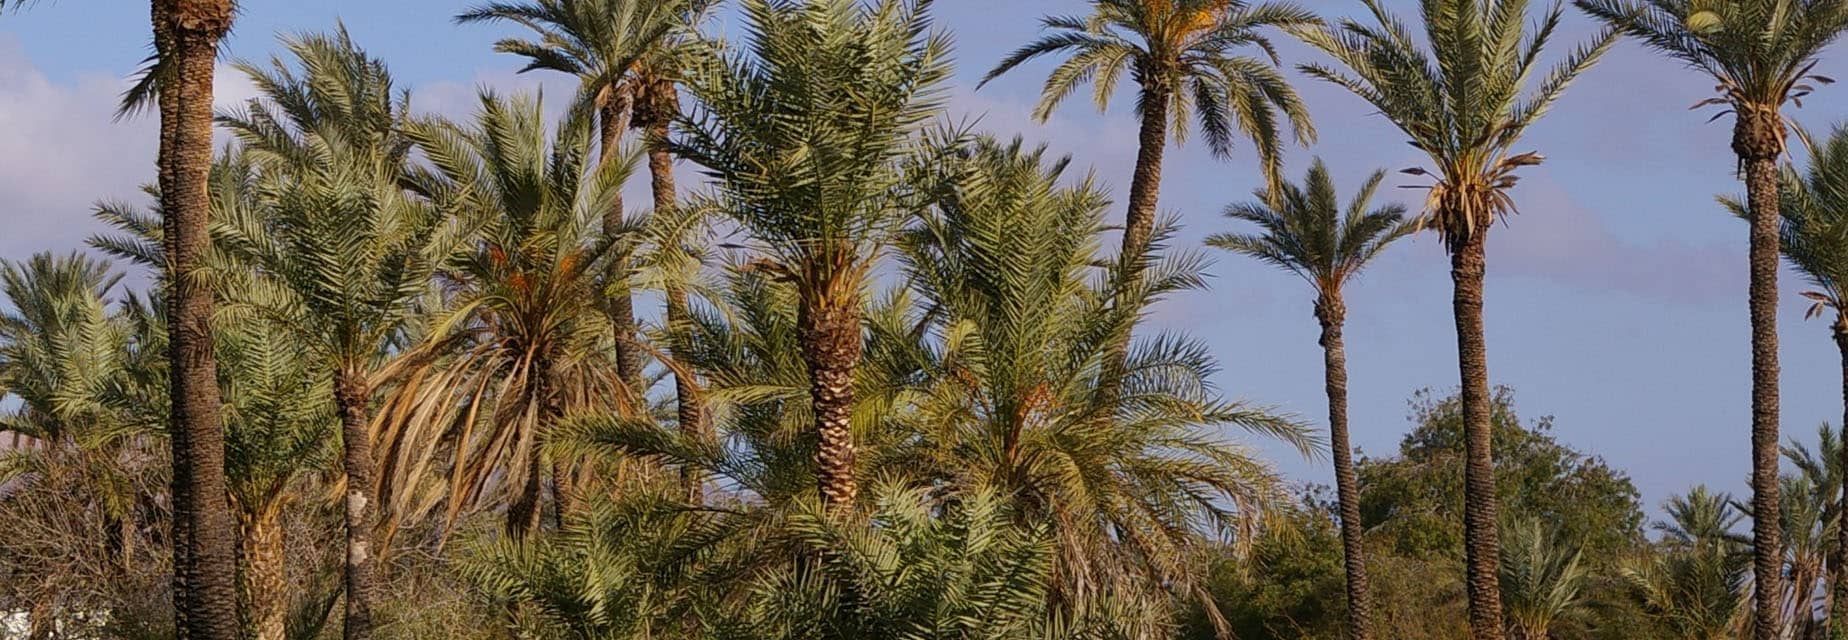 Renforcement et développement durable des activités agricoles de la Palmeraie de Marrakech